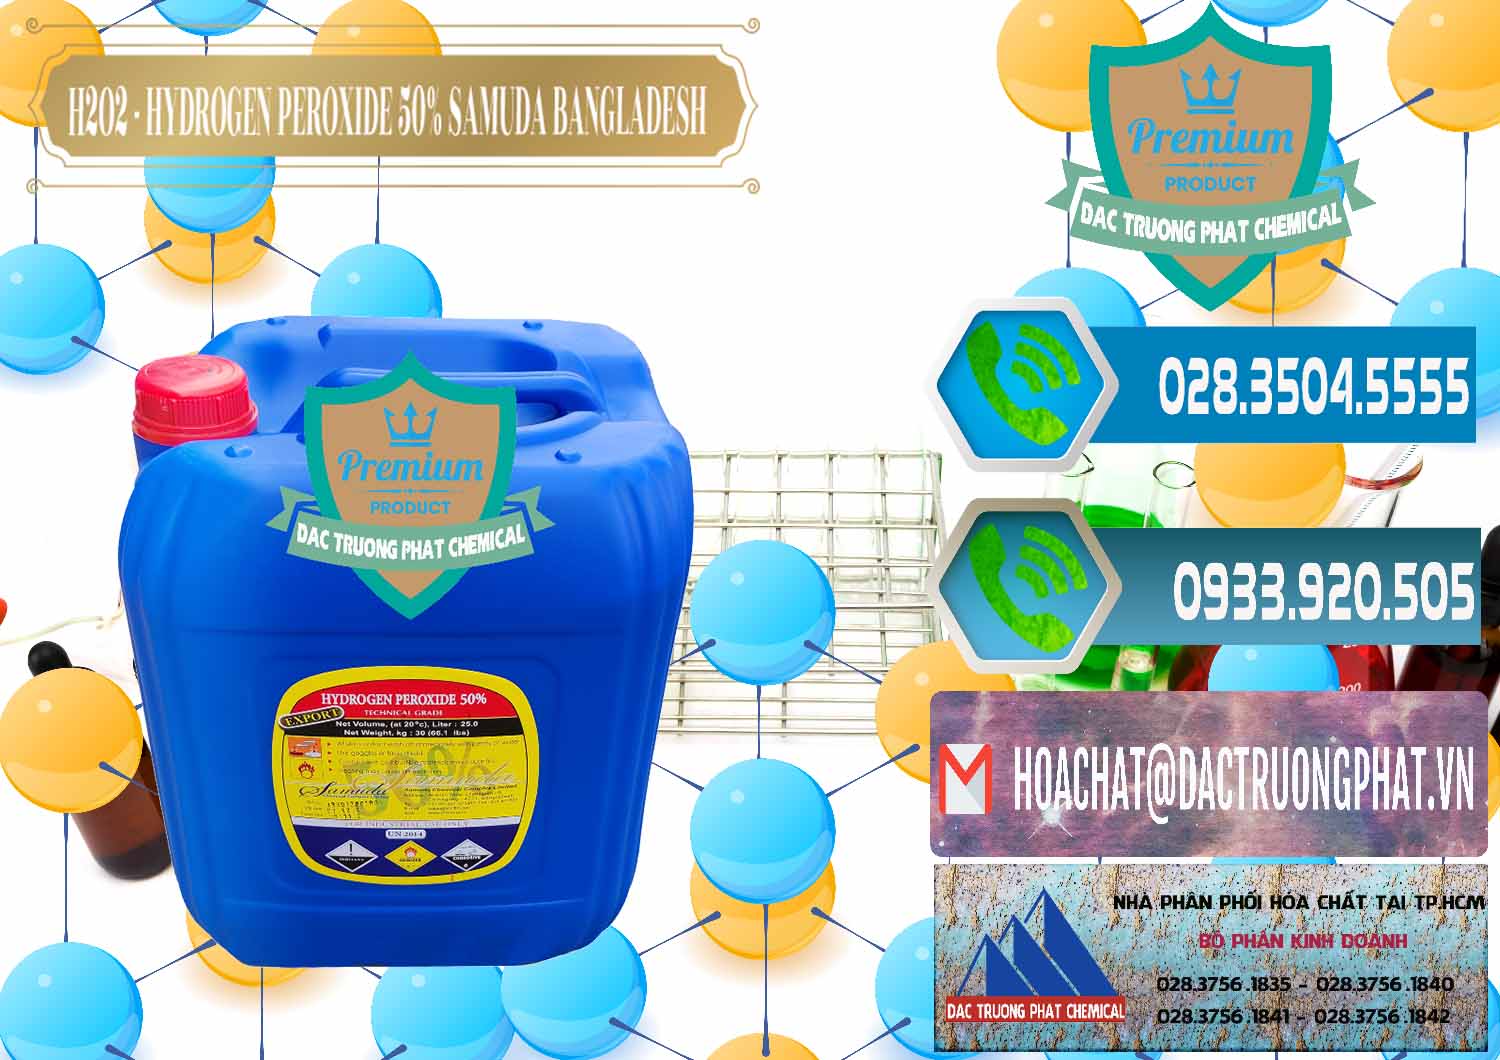 Nơi chuyên cung ứng - bán H2O2 - Hydrogen Peroxide 50% Samuda Bangladesh - 0077 - Chuyên nhập khẩu - cung cấp hóa chất tại TP.HCM - congtyhoachat.net